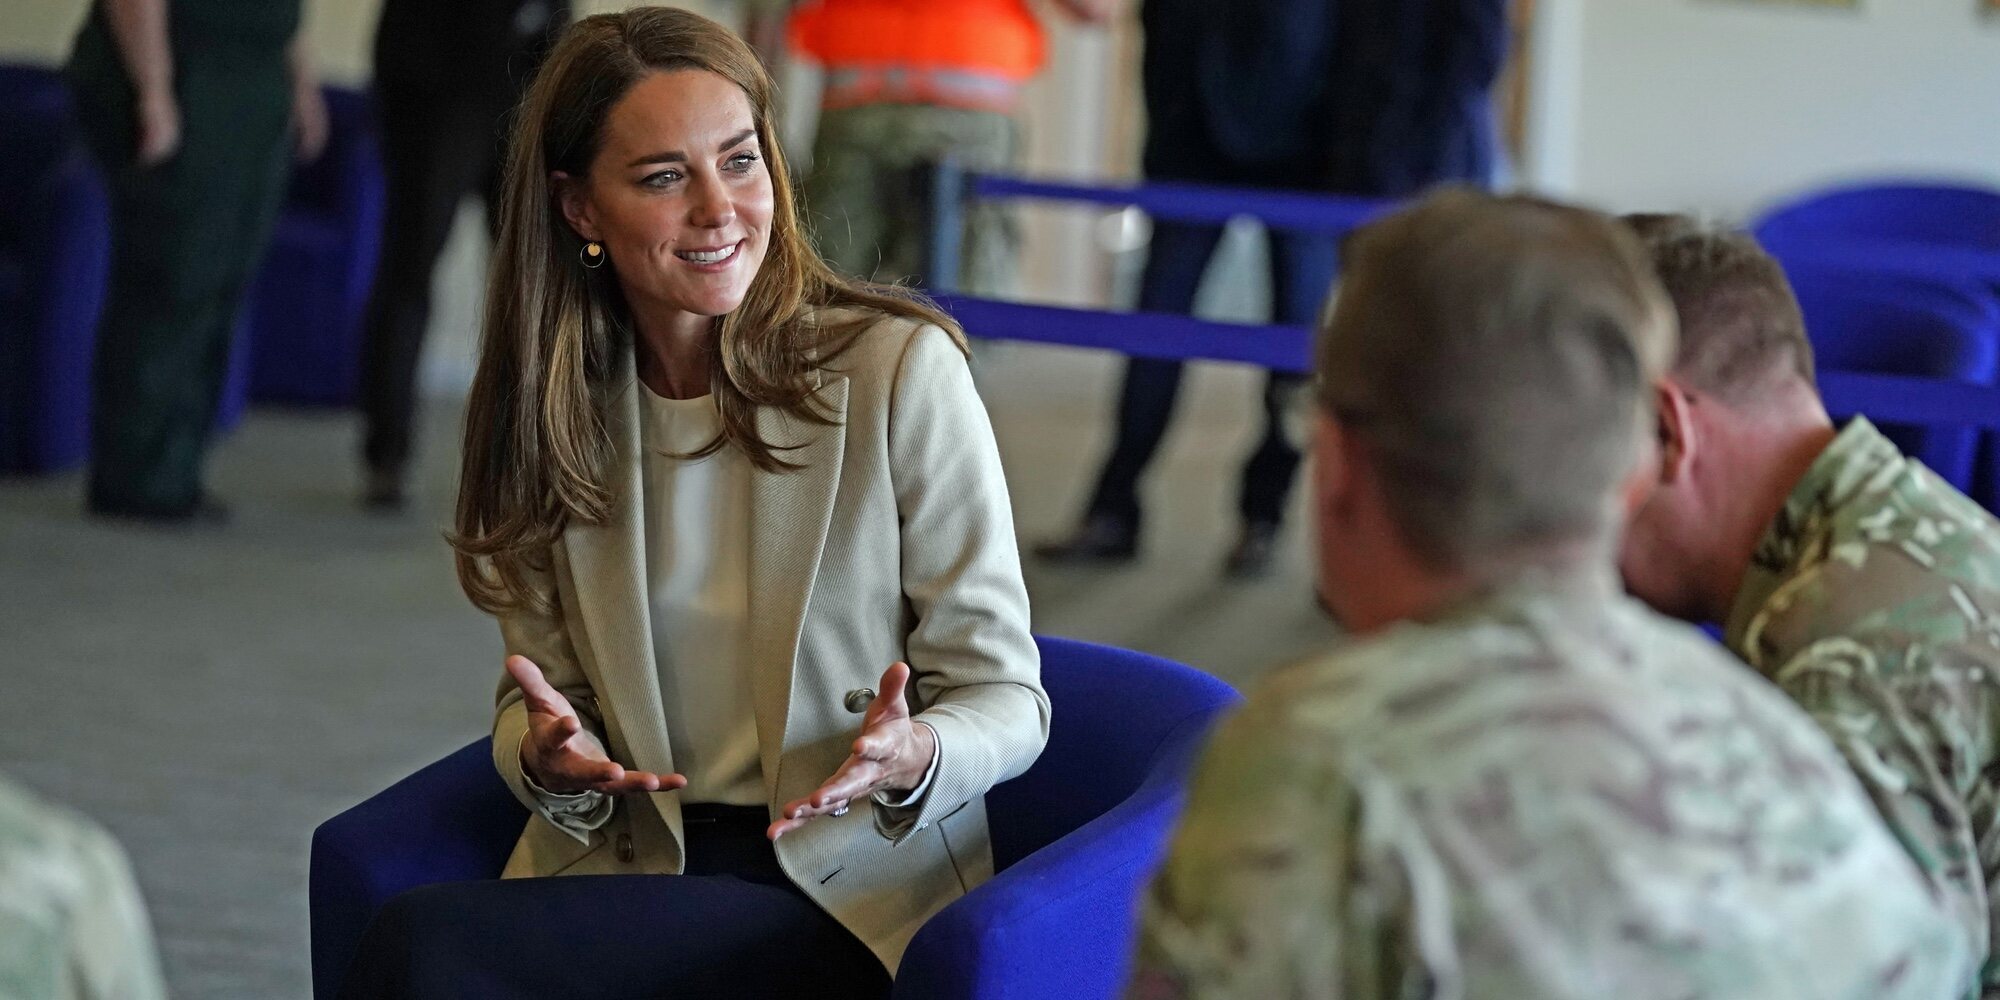 El regreso de Kate Middleton tras las vacaciones y su boda familiar: sonrisas y encuentro militar